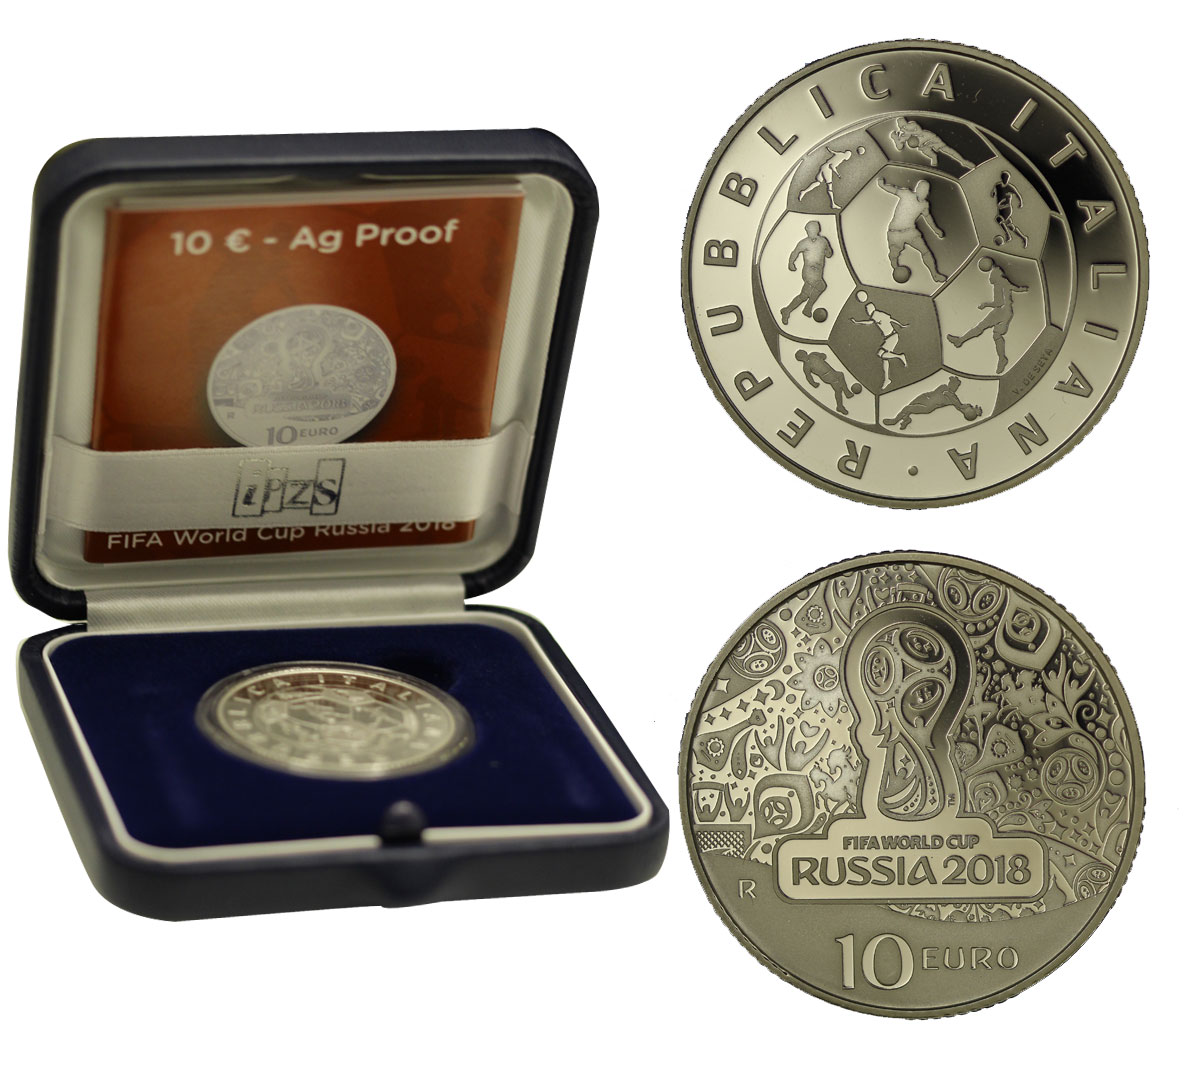 MONDIALI DI CALCIO RUSSIA 2018 - 10 Euro commemorativa in argento